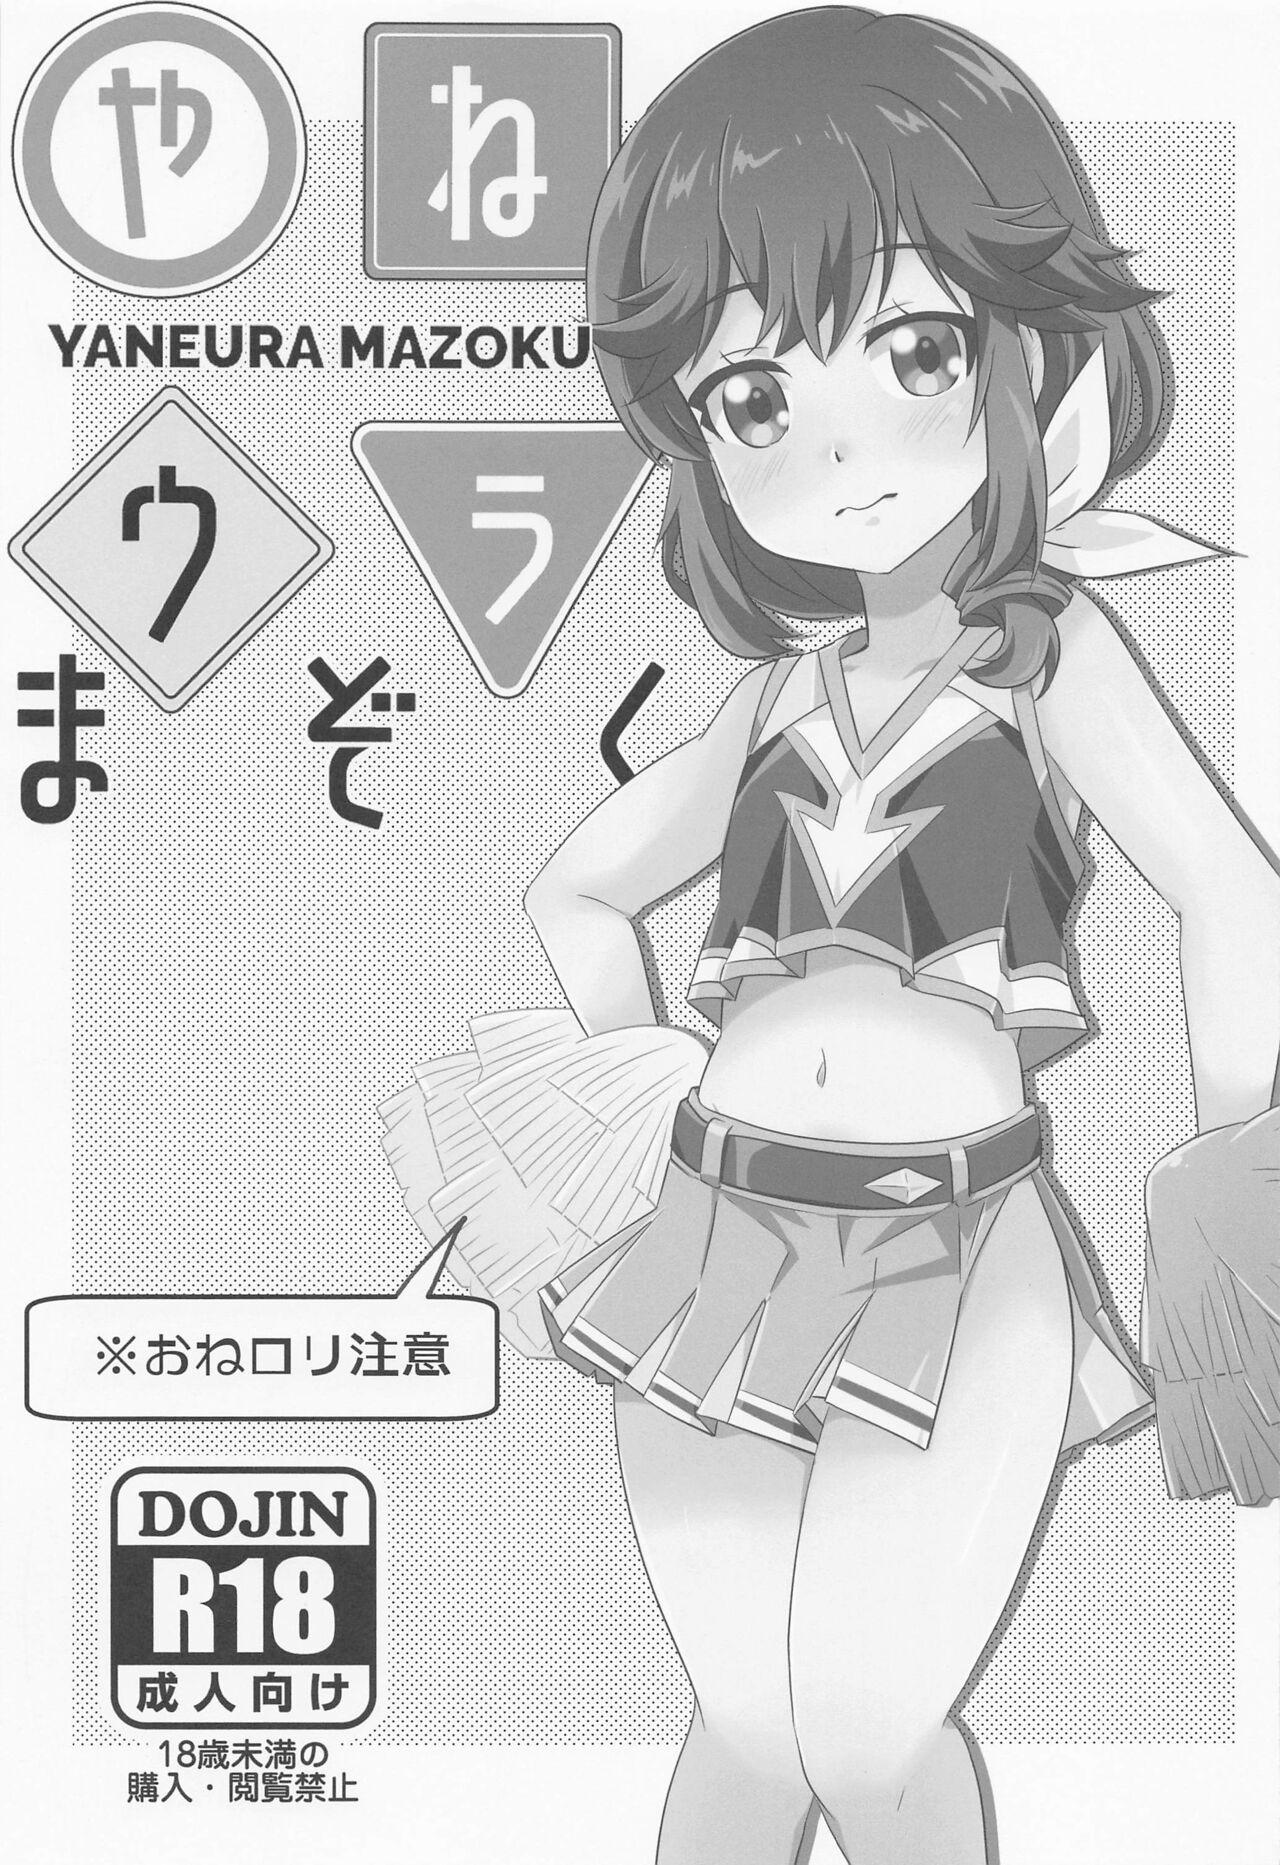 Solo Yaneura Mazoku – Machikado mazoku | the demon girl next door Dotado - Page 1